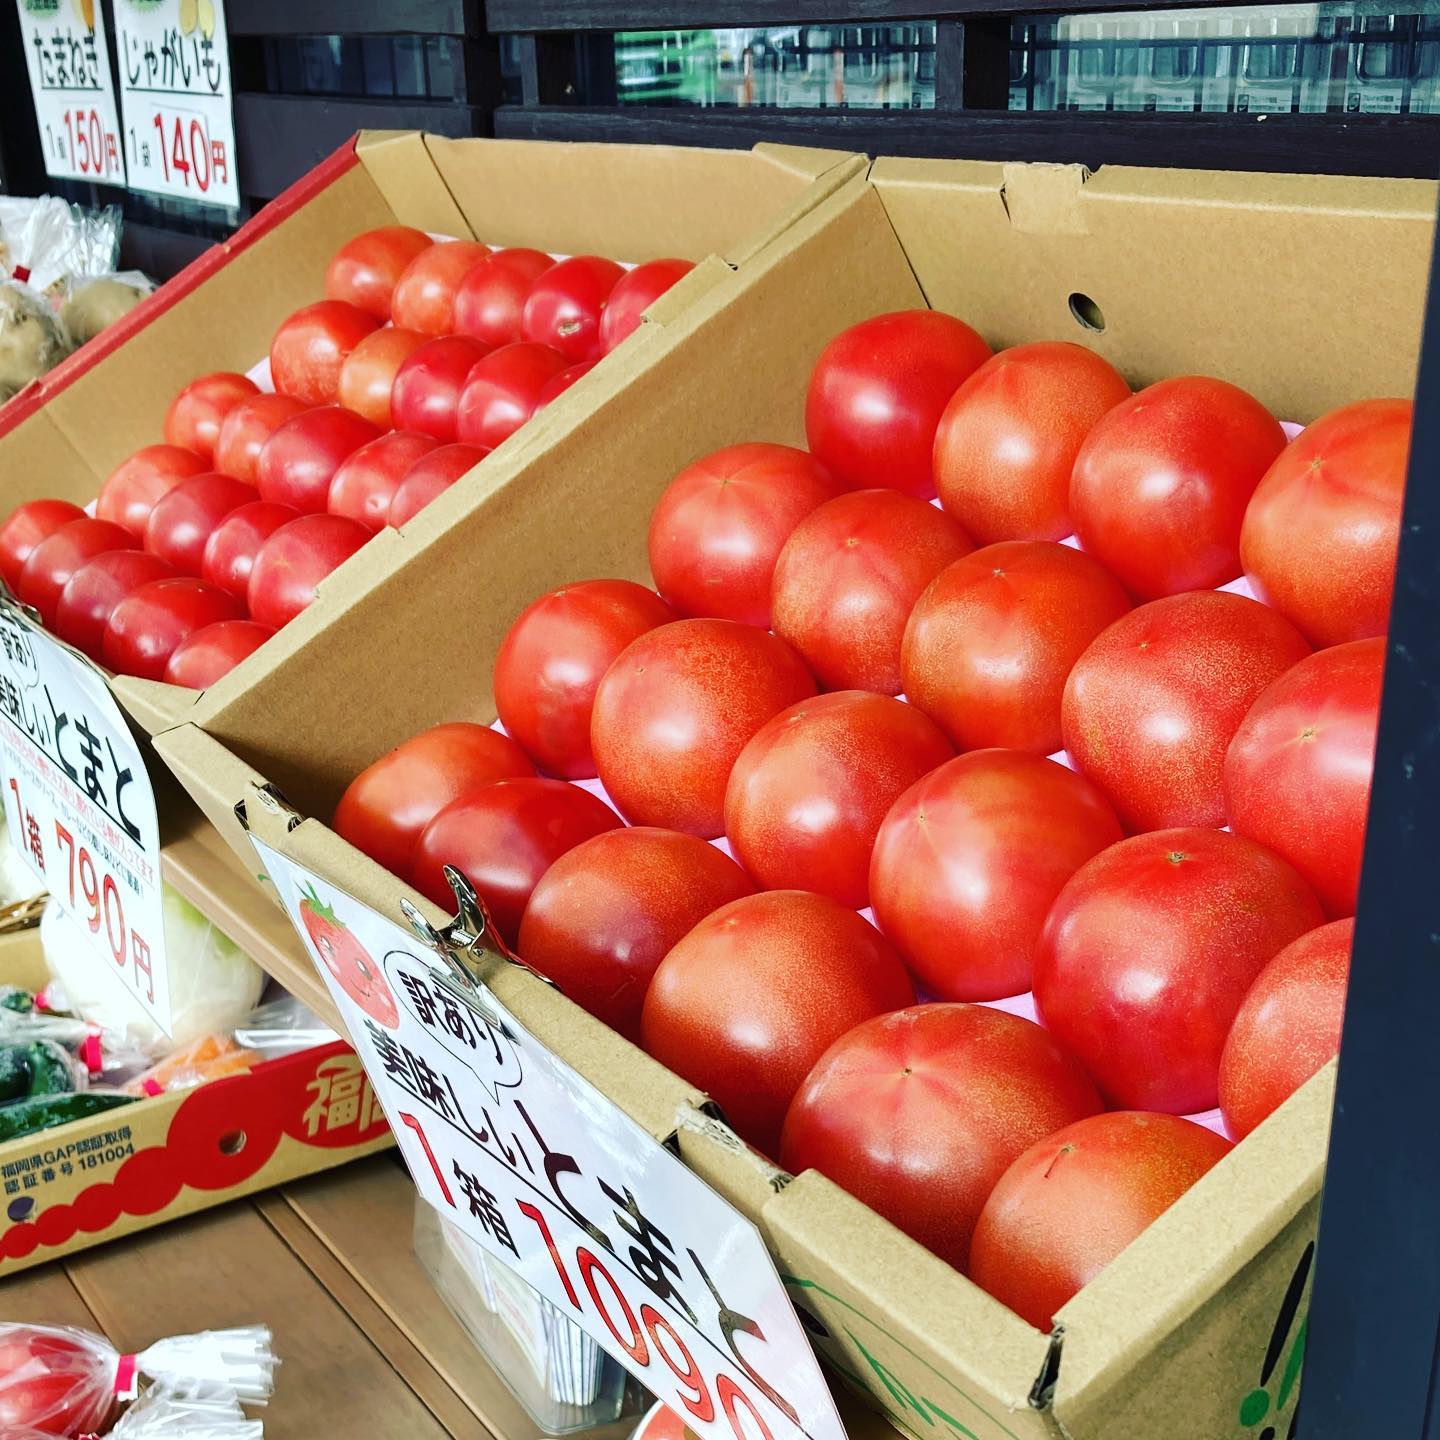 こんにちはマエダ文具店です♪ちょっとやわらかめの美味しそうに熟したトマトがお買い得です！トマトソースやピューレにいいぐらいのやわらか〜いのトマトの箱入りもありますので、ご要望ありましたらお声がけください#マエダ文具店 #前田文具店#梅小路公園 #梅小路京都西駅#京都水族館 #京都鉄道博物館 #七条センター商店街#ホテルエミオン京都 #梅小路ポテル京都 #ザロイヤルパークホテル京都梅小路 #トマト #トマトソース #トマトピューレ #完熟 #トマトも売ってる文具店